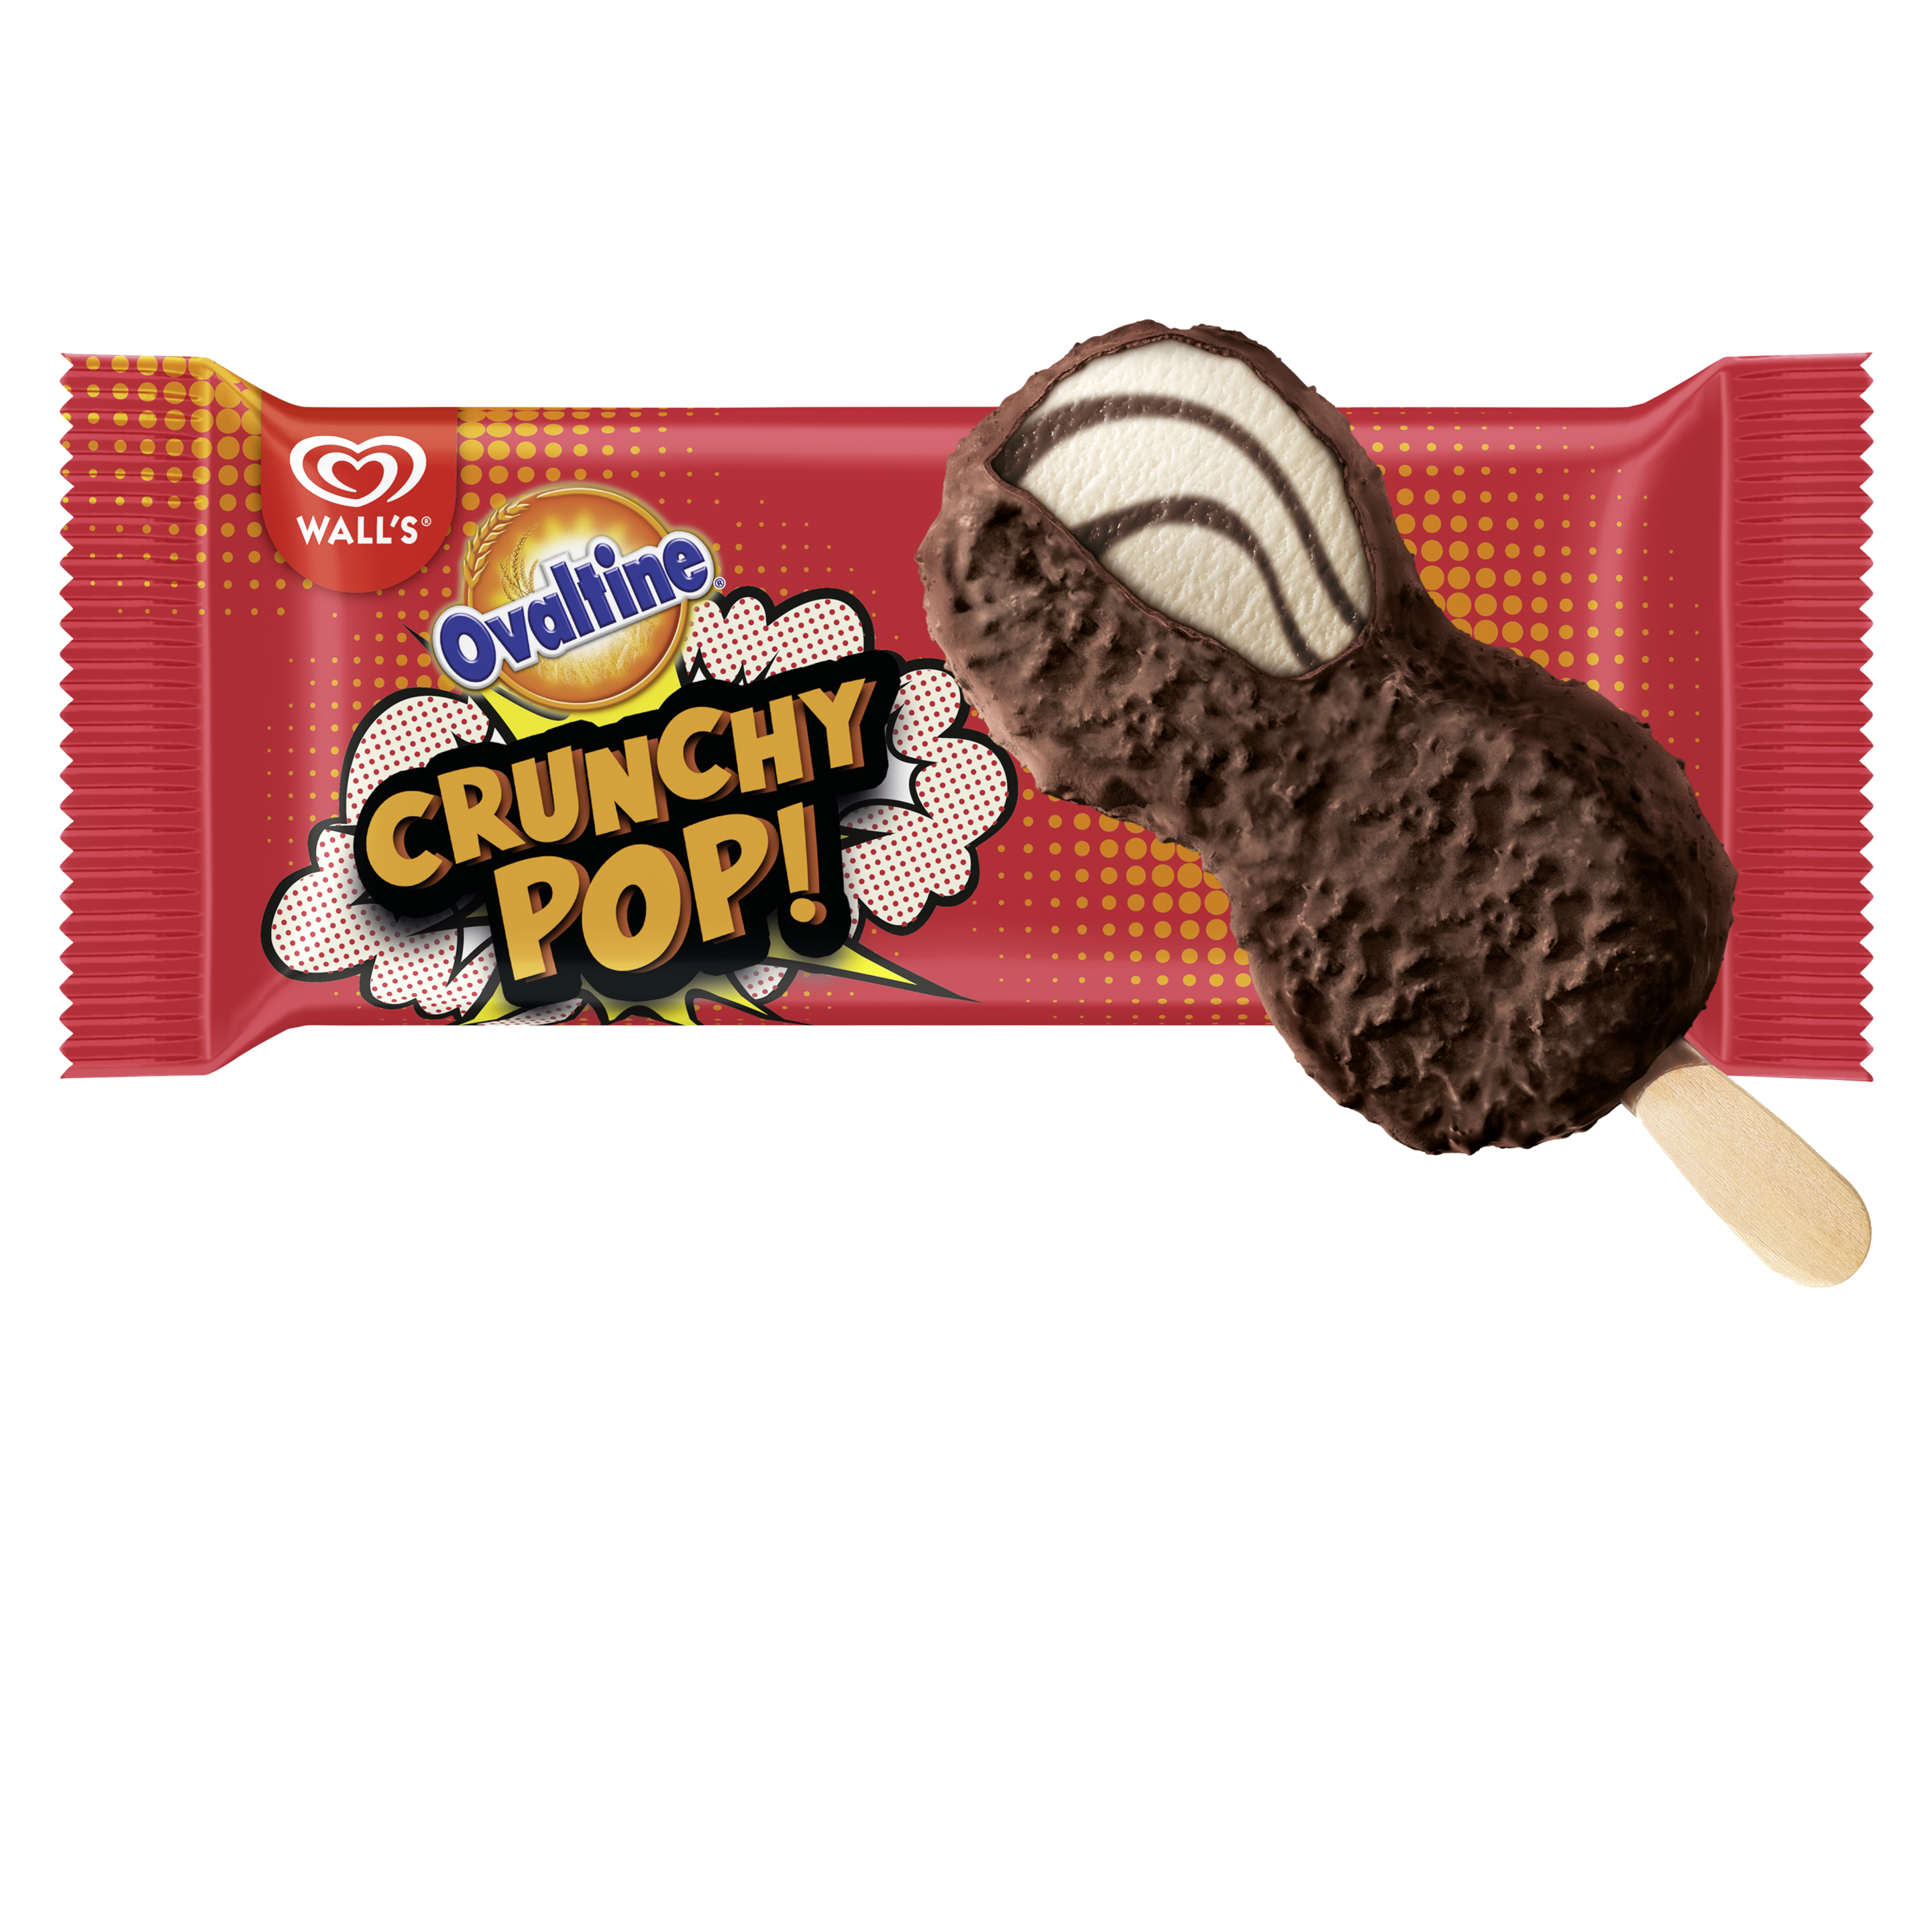 Wall's Ovaltine Crunchy Pop